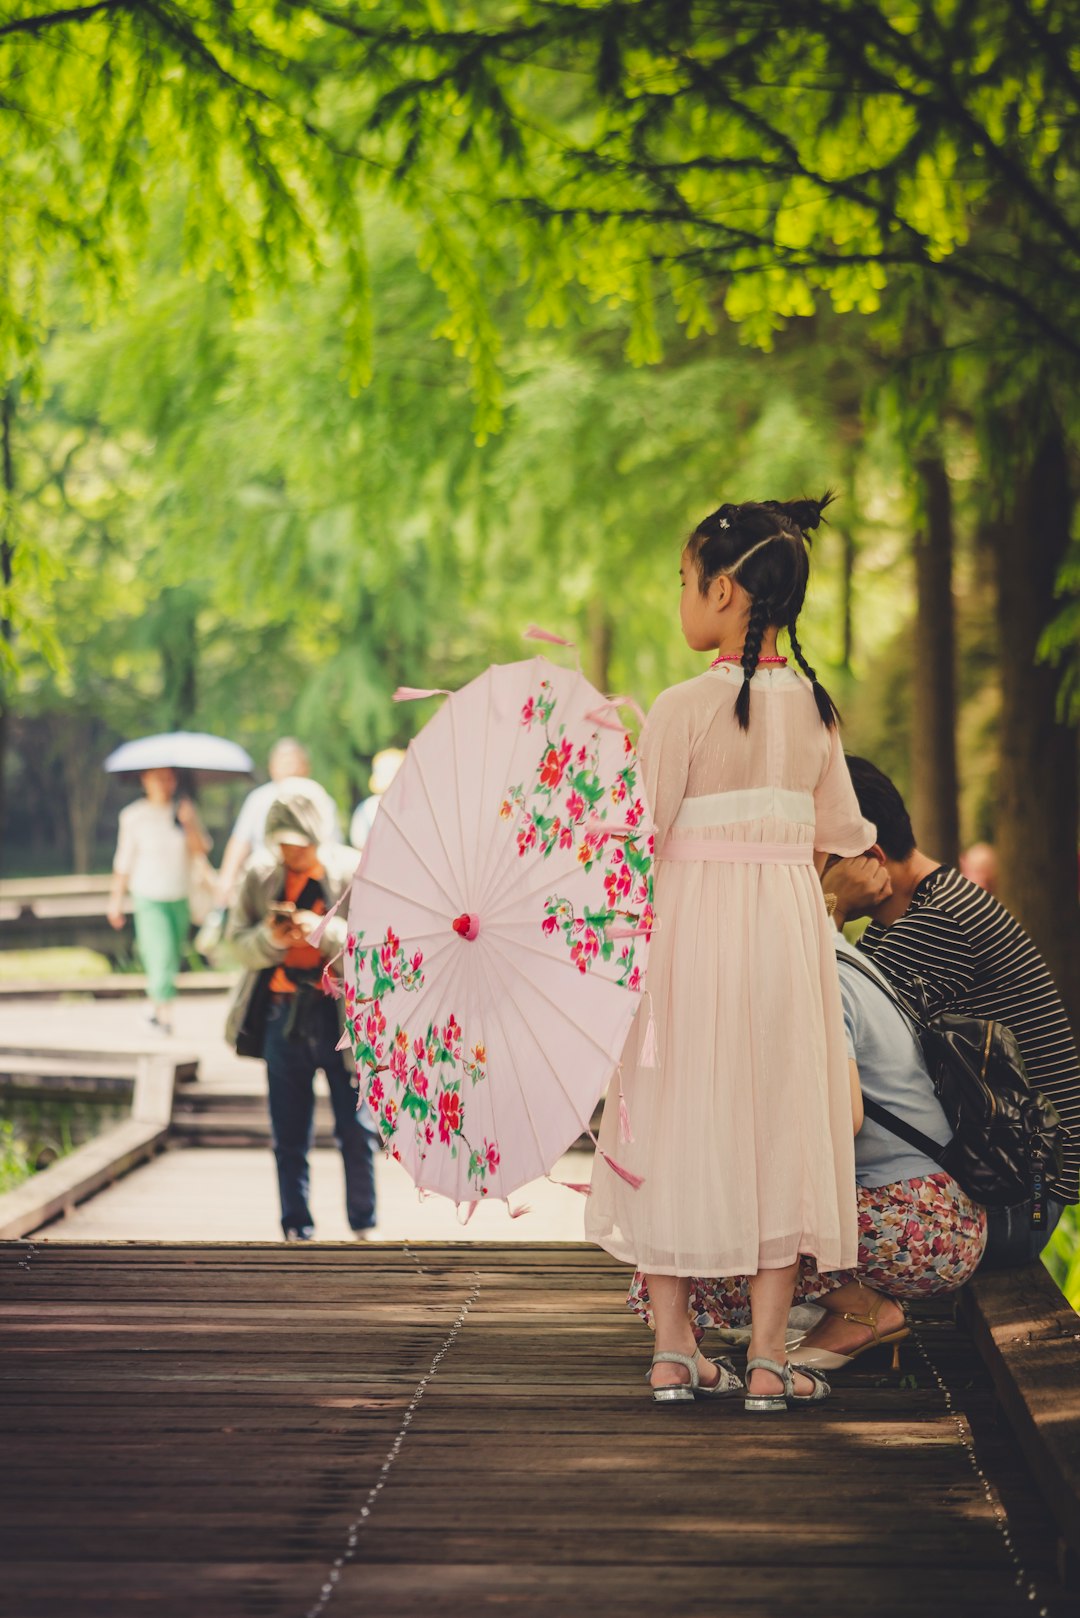 woman in white dress holding umbrella walking on sidewalk during daytime